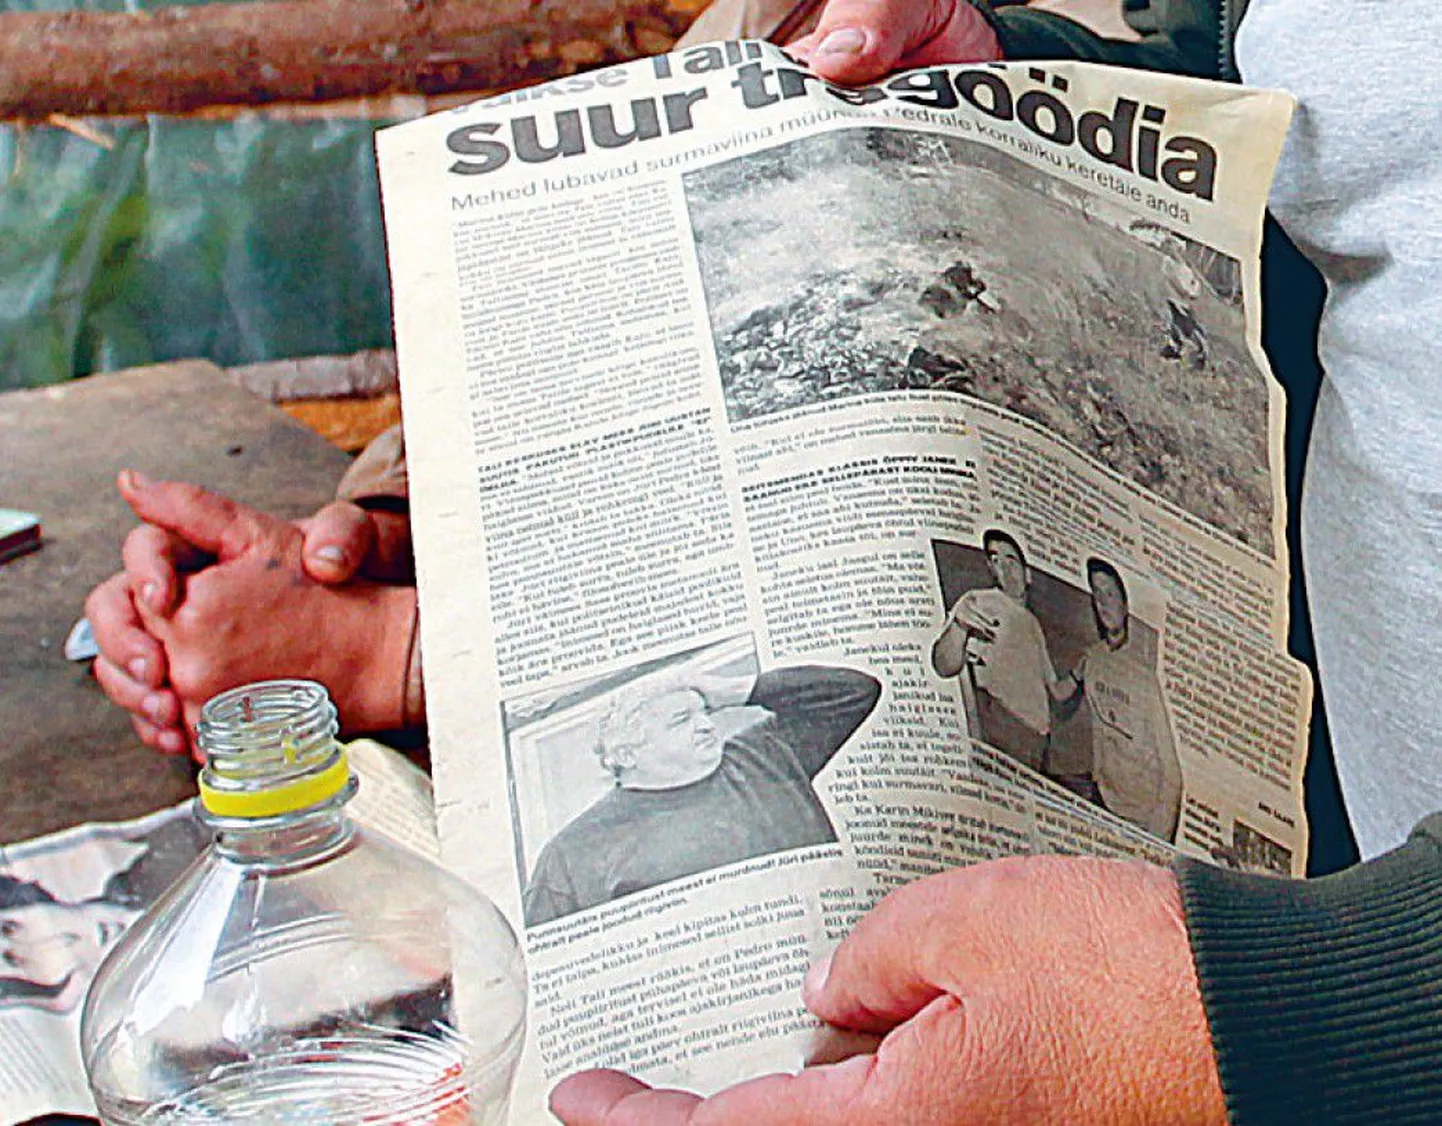 Мужчины из деревни Тали вспоминали события десятилетней давности, перебирая газетные вырезки.